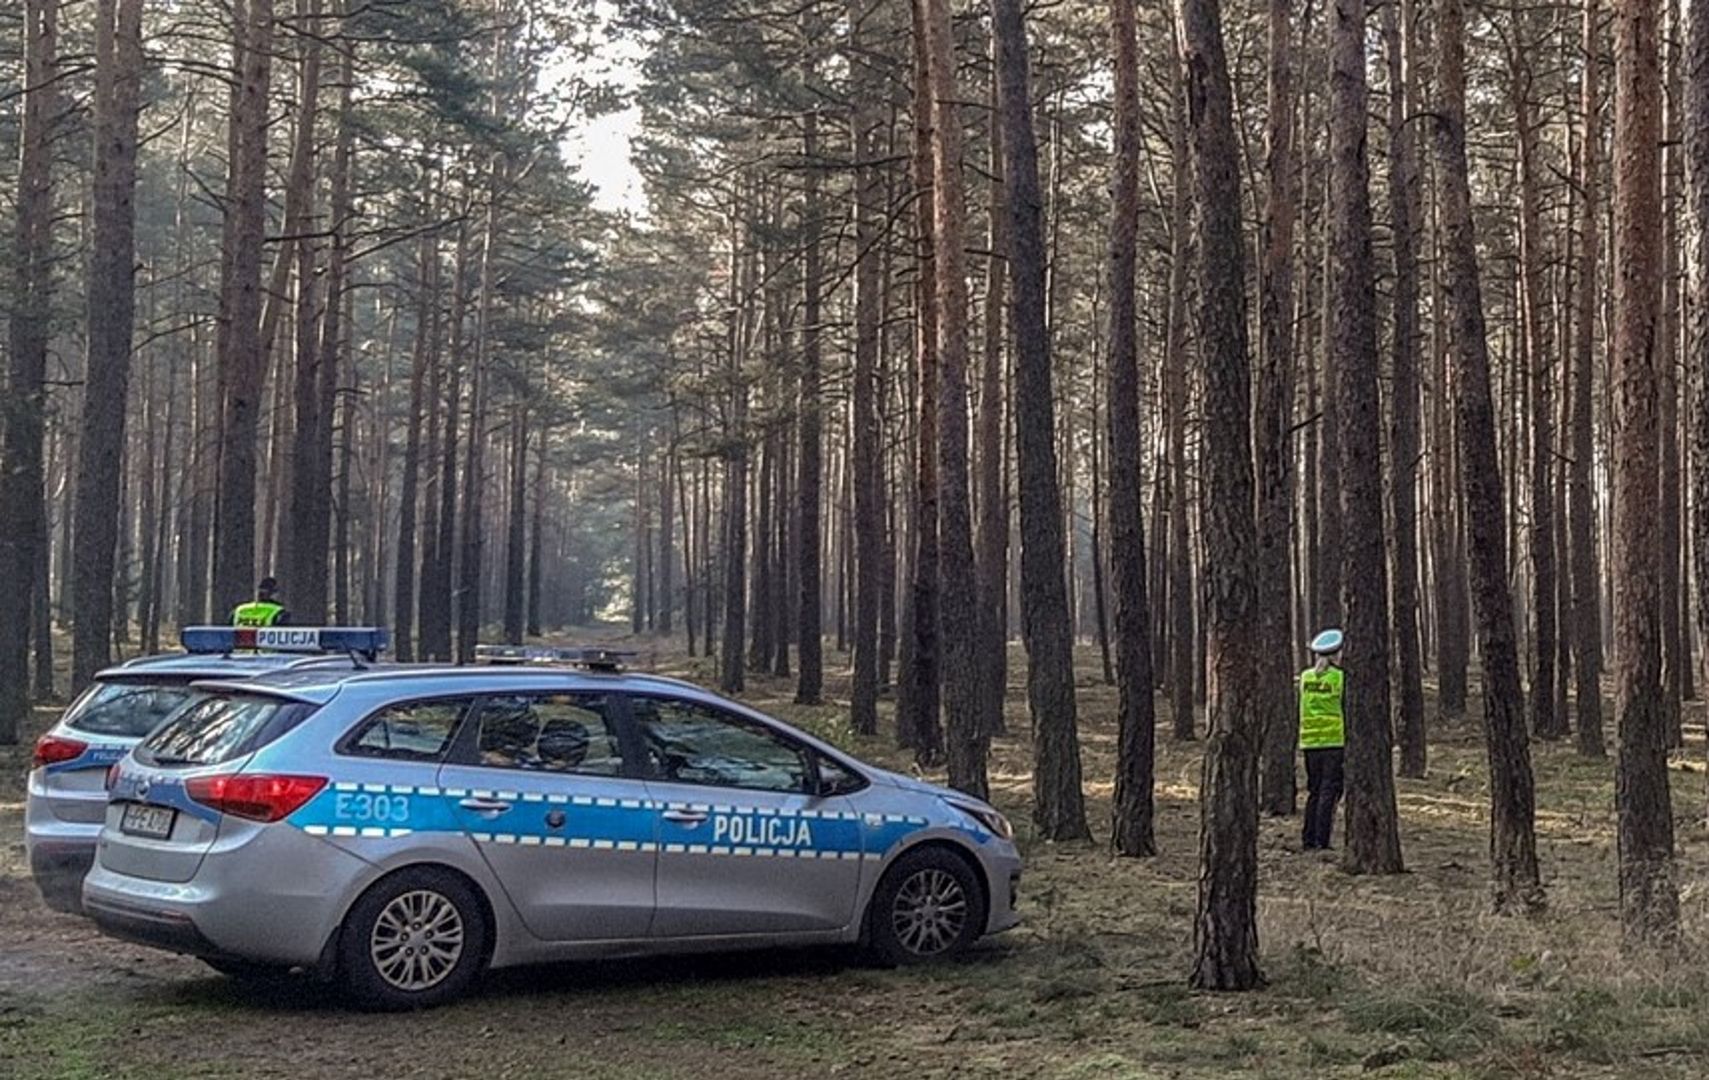 Makabryczne odkrycie w poznańskim lesie. Spacerowicze wezwali policję